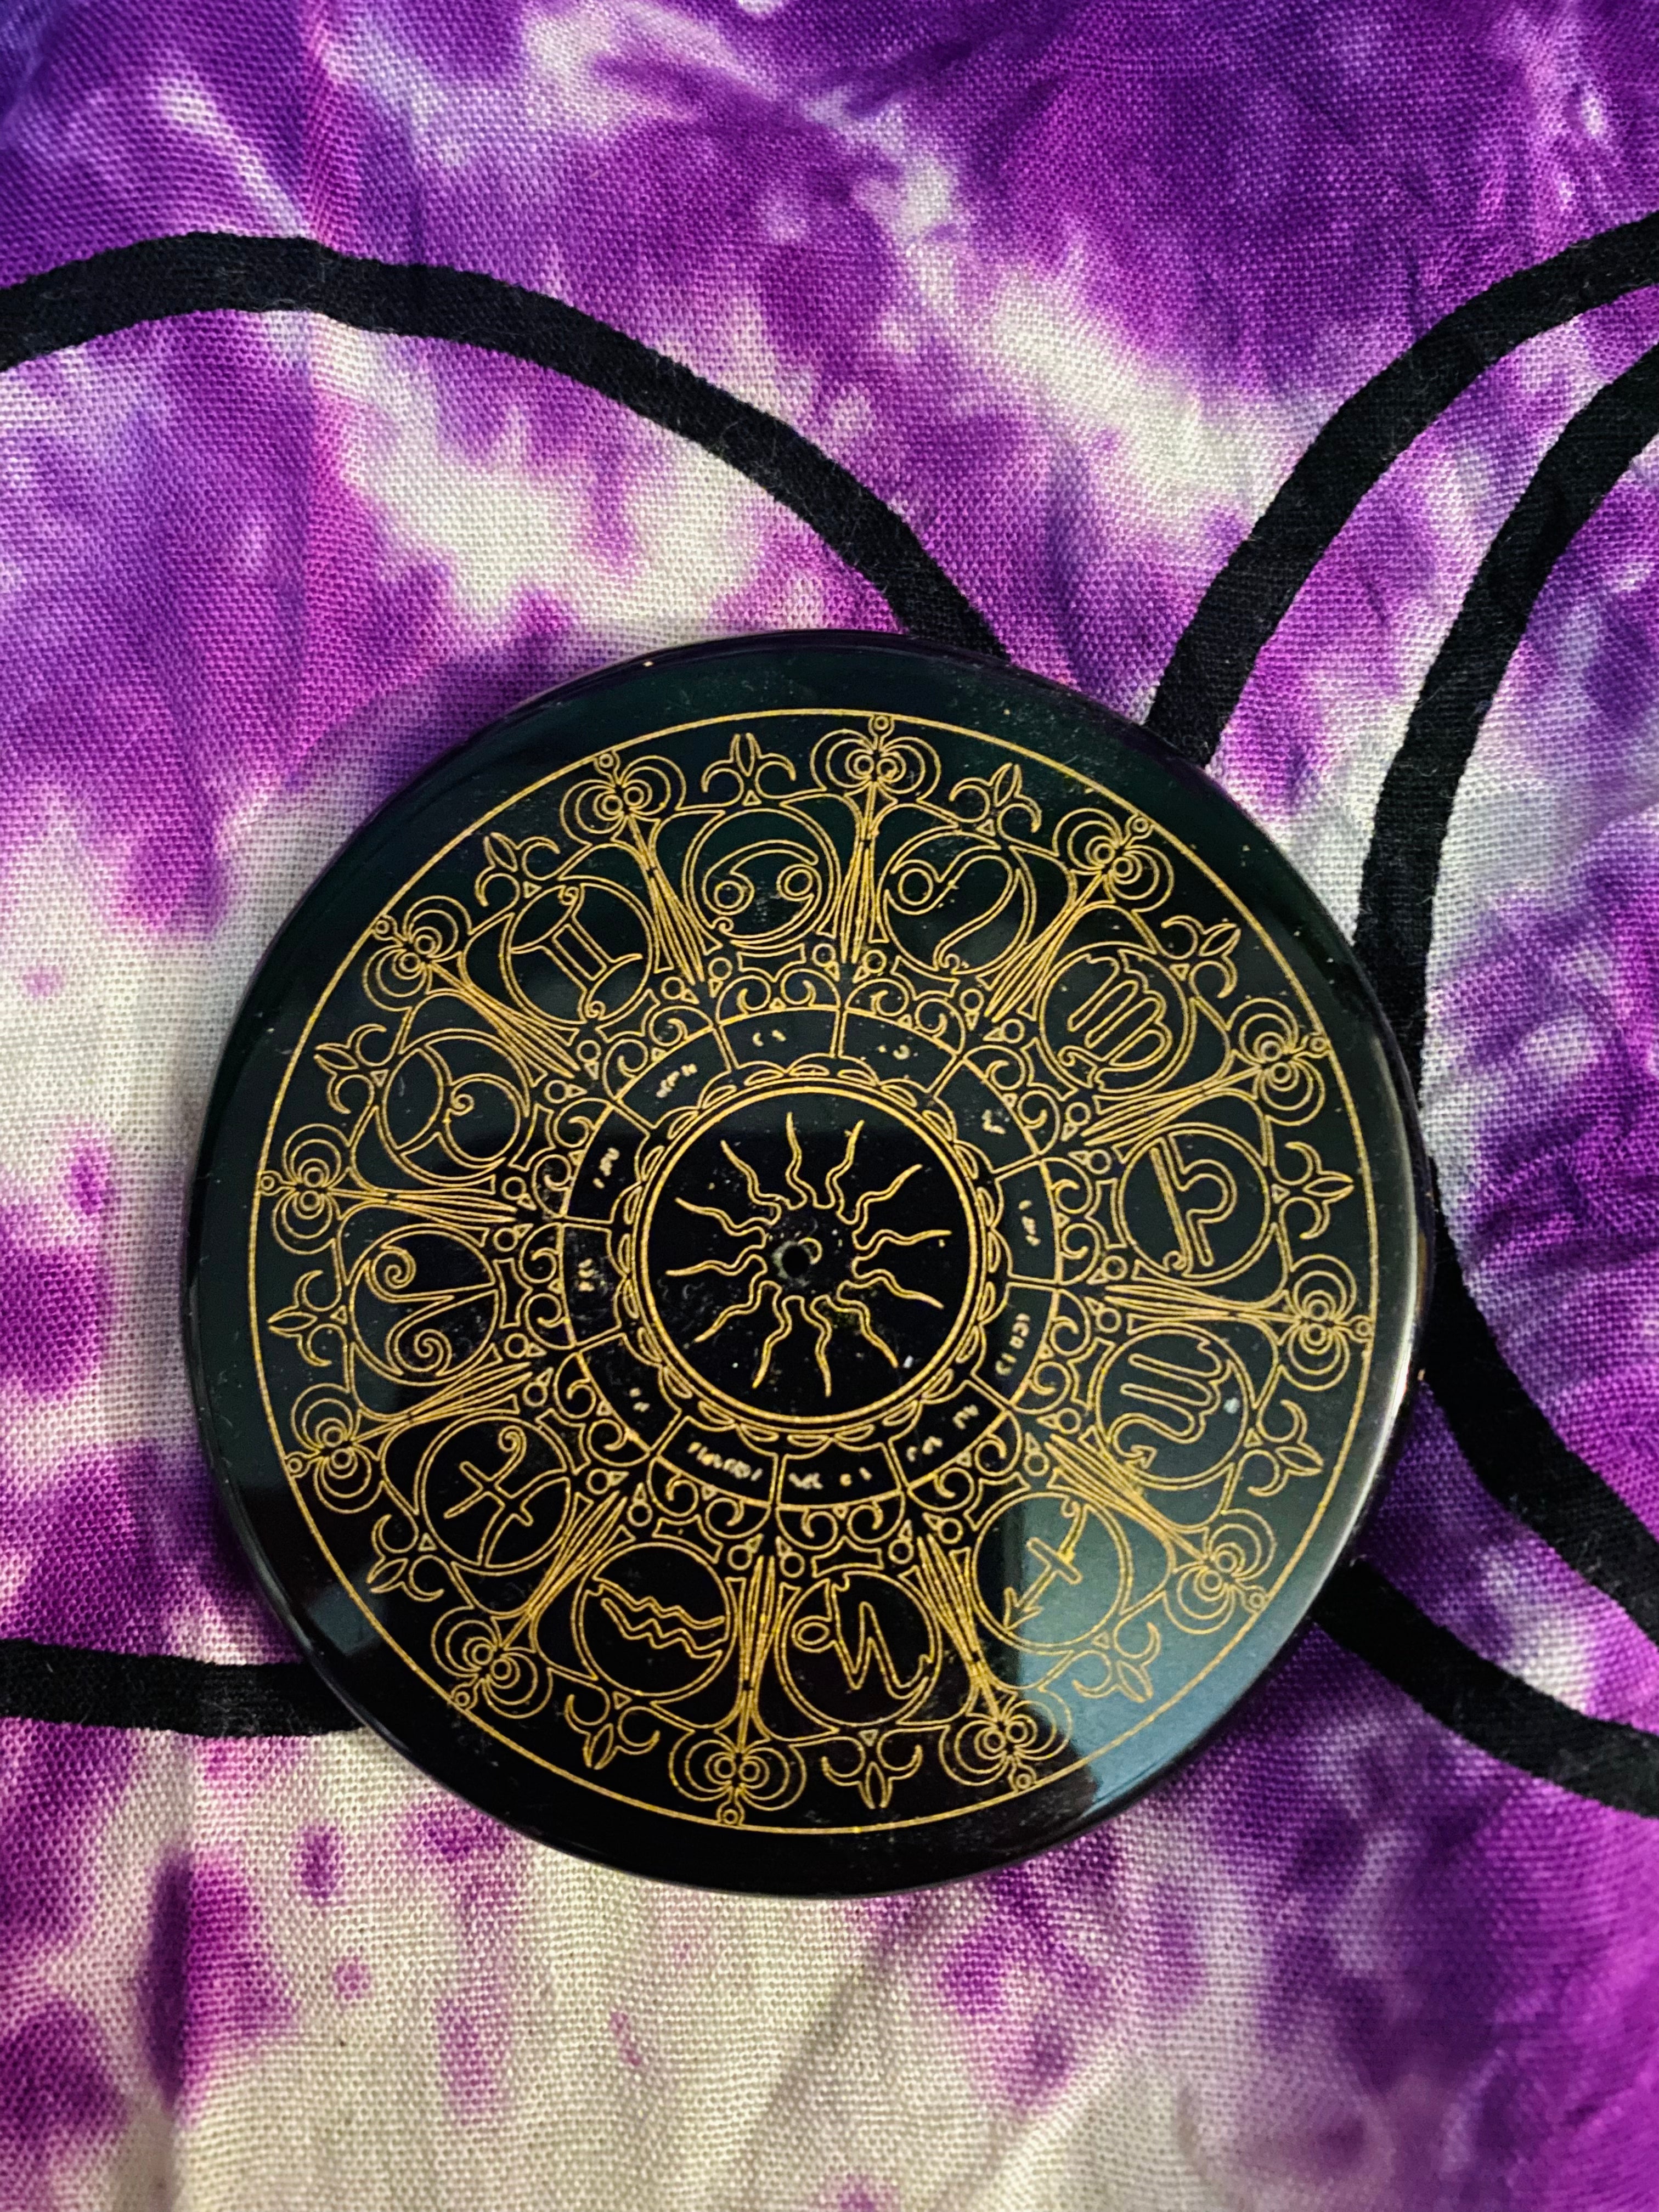 Black Agate Gold Printed -Zodiac Signs Tile /Incense Burner 3